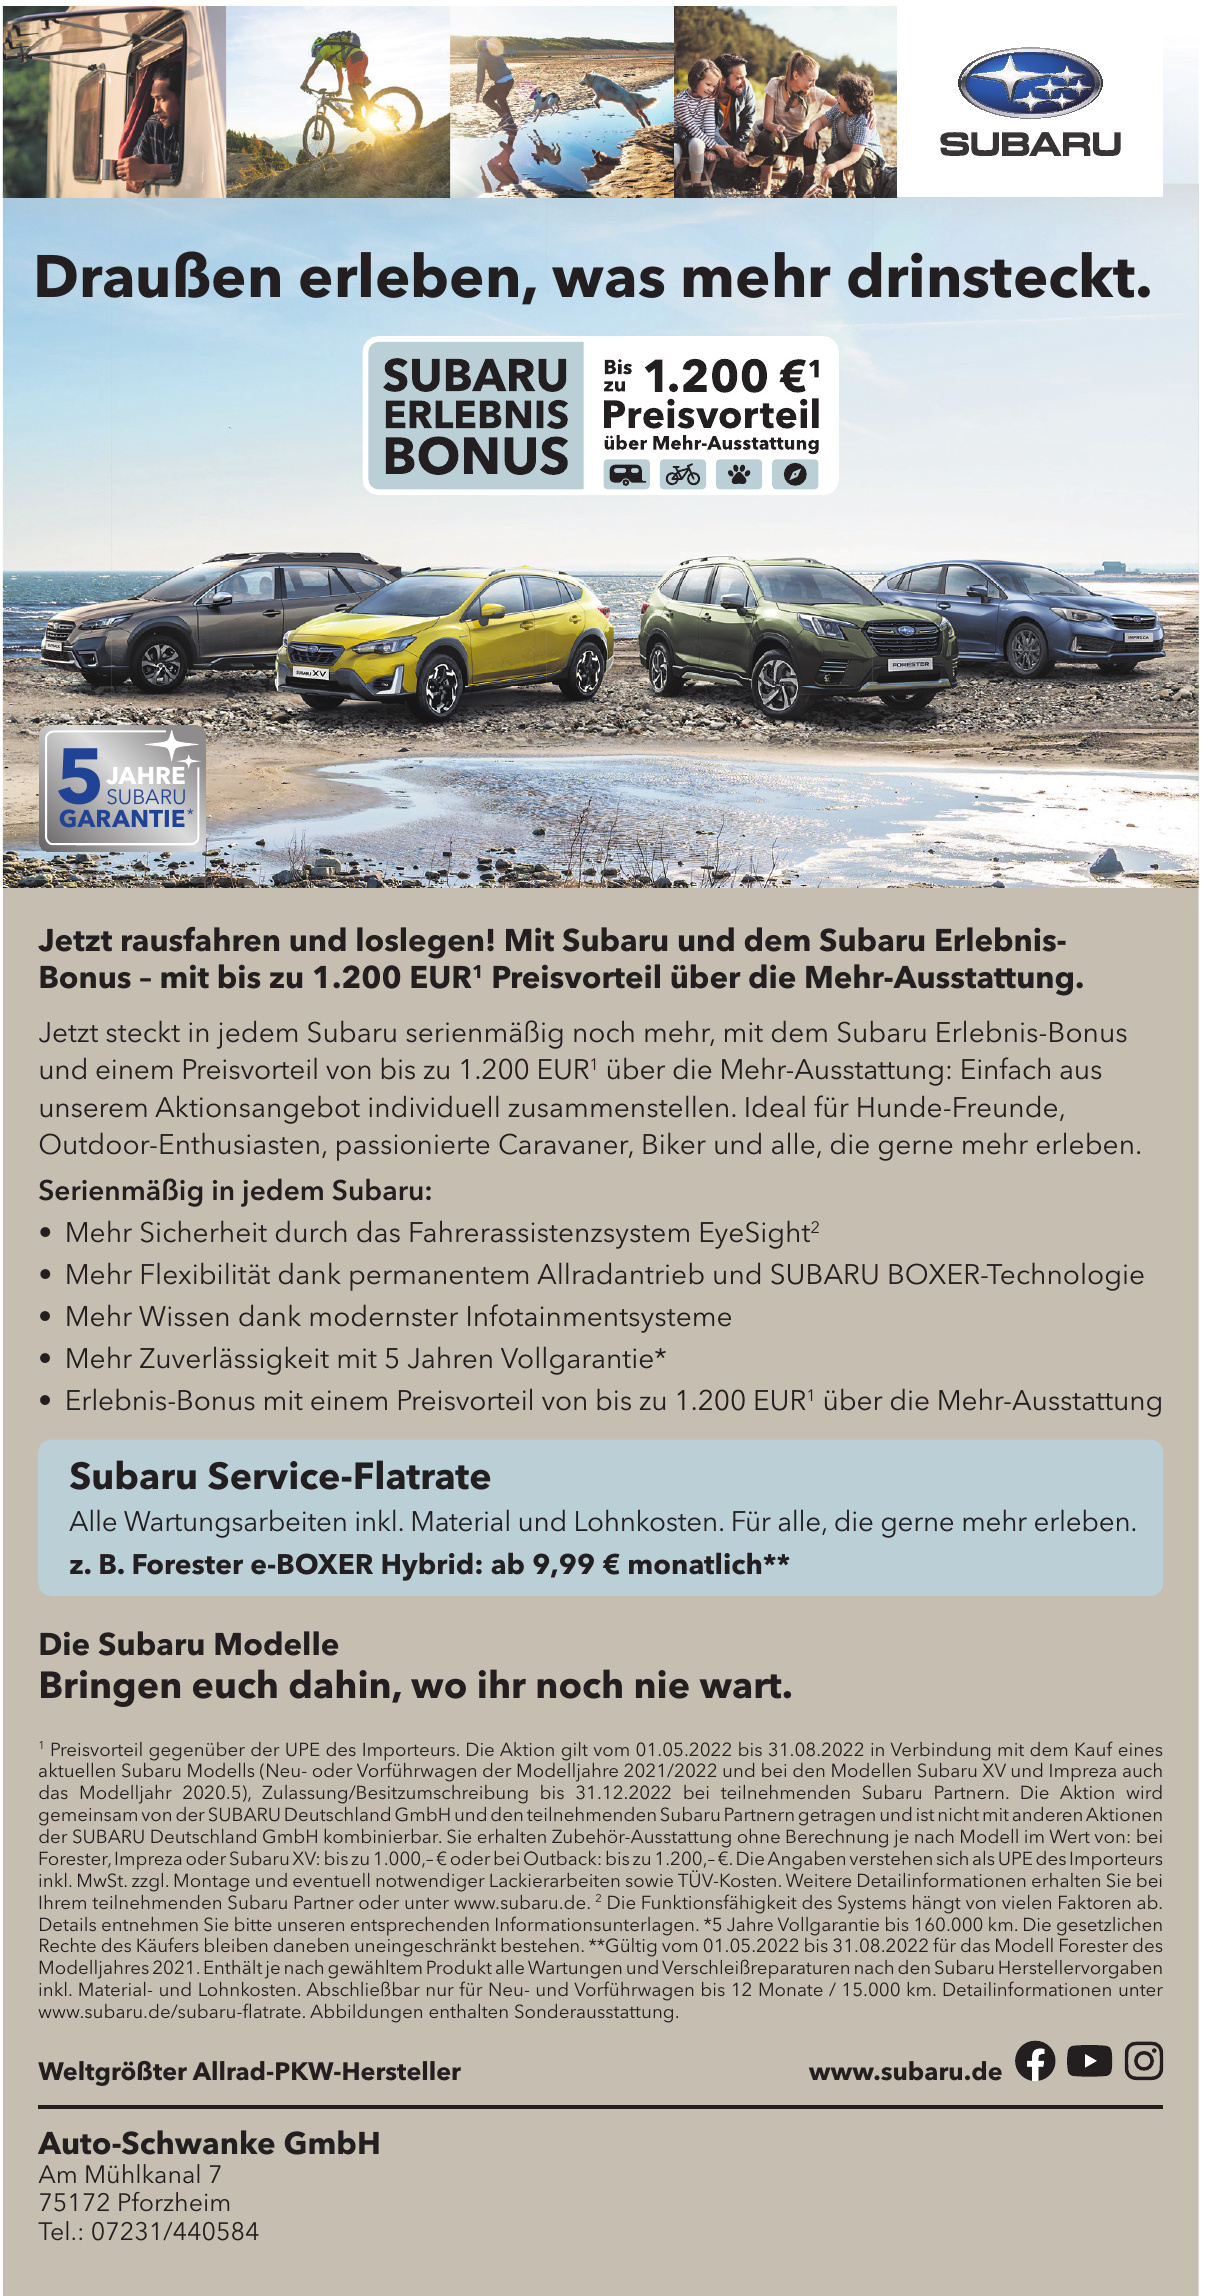 Auto-Schwanke GmbH